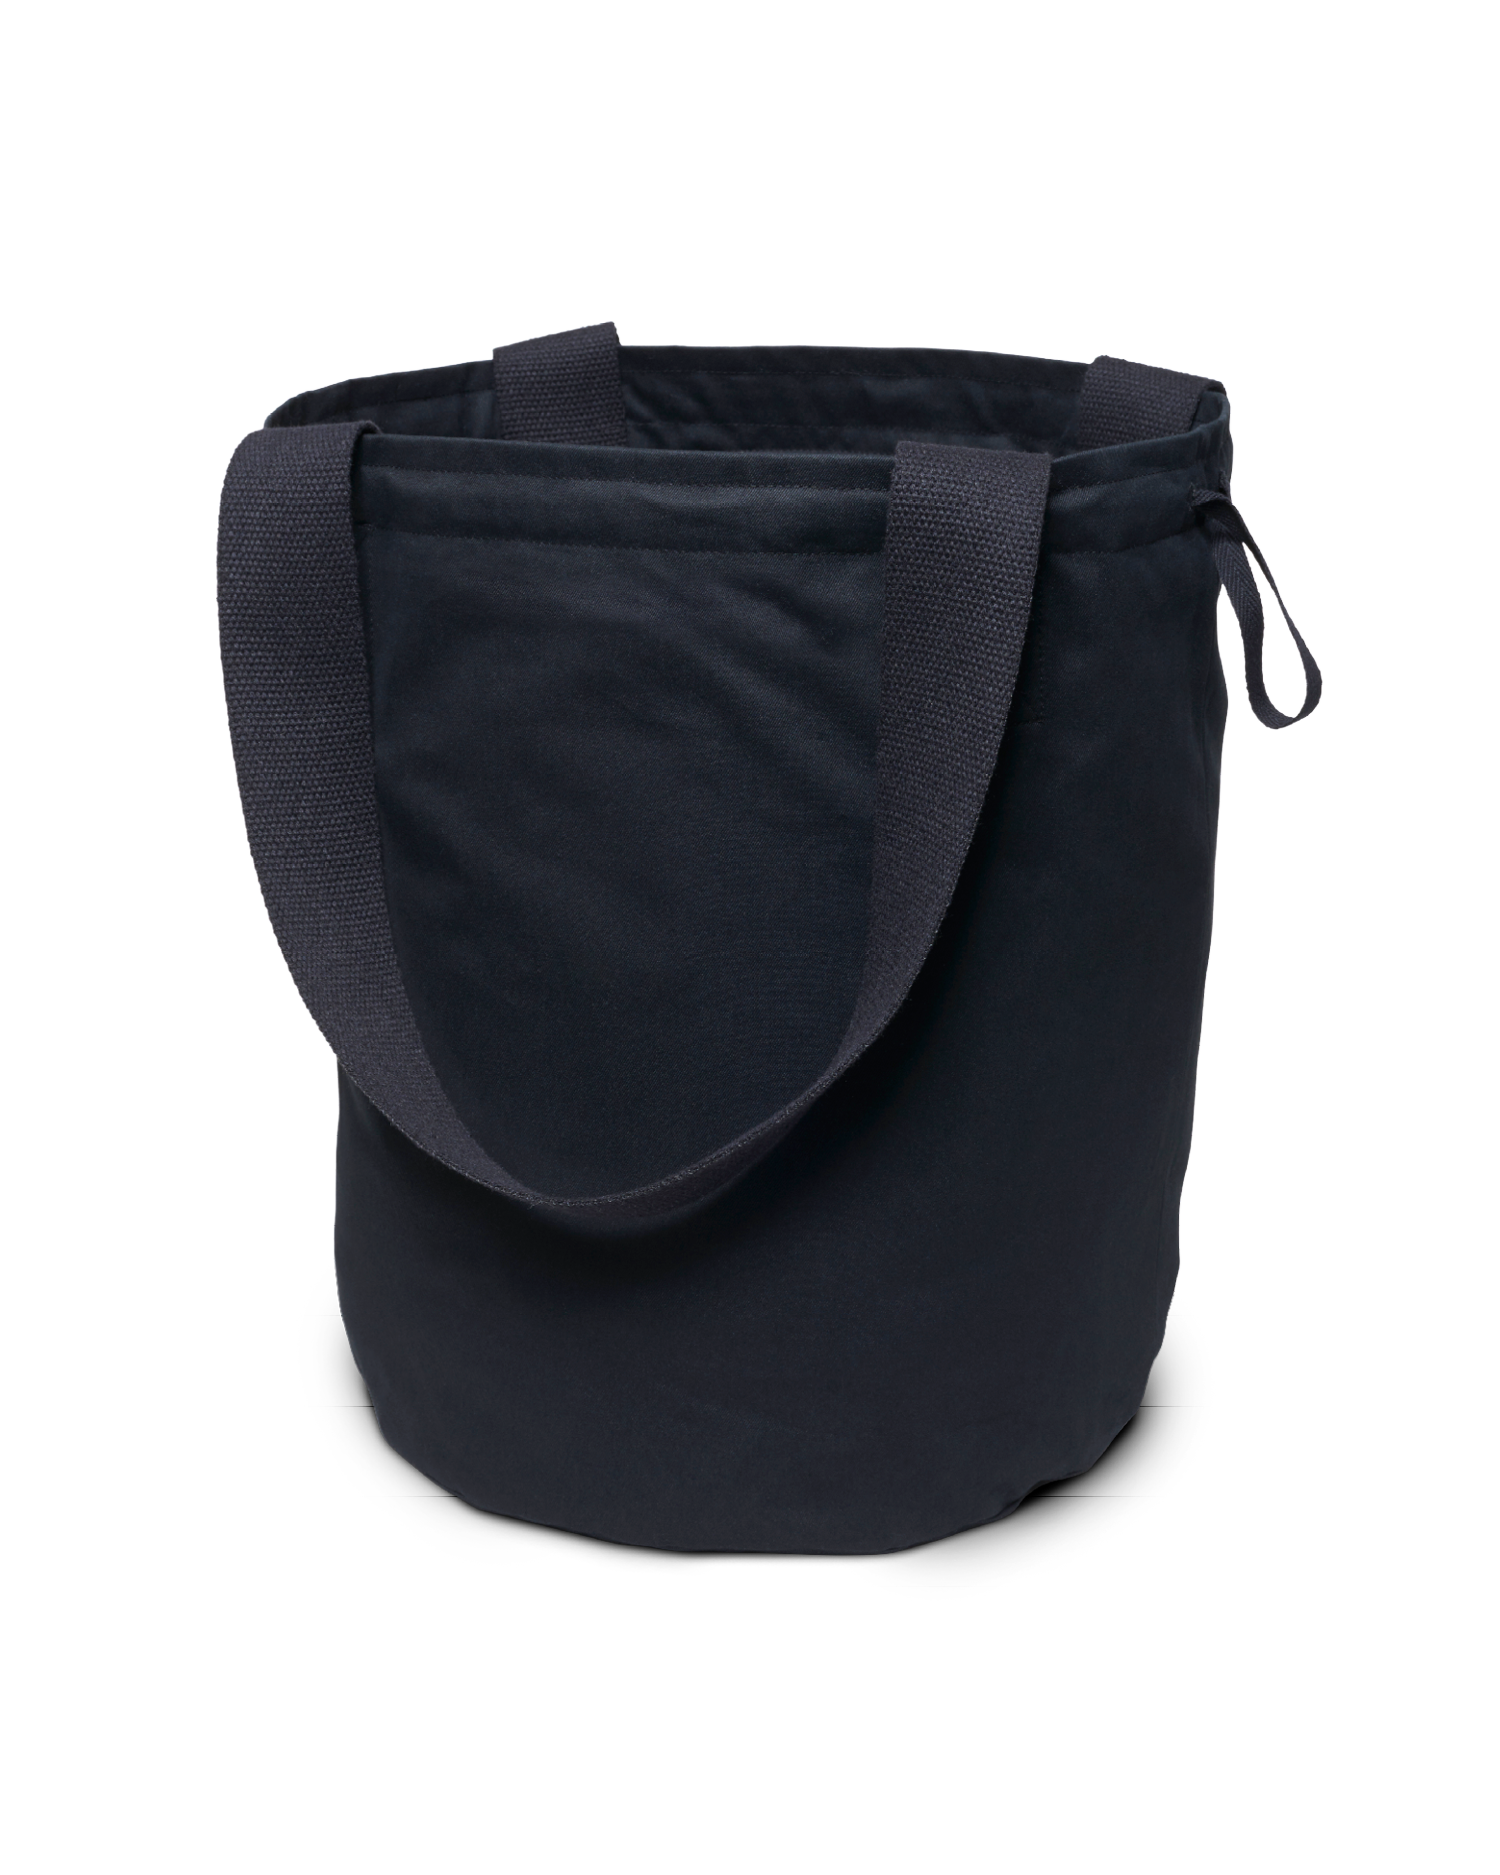 Lacey Croc-Effect Bag | Black Leather Tote Bag | LK Bennett